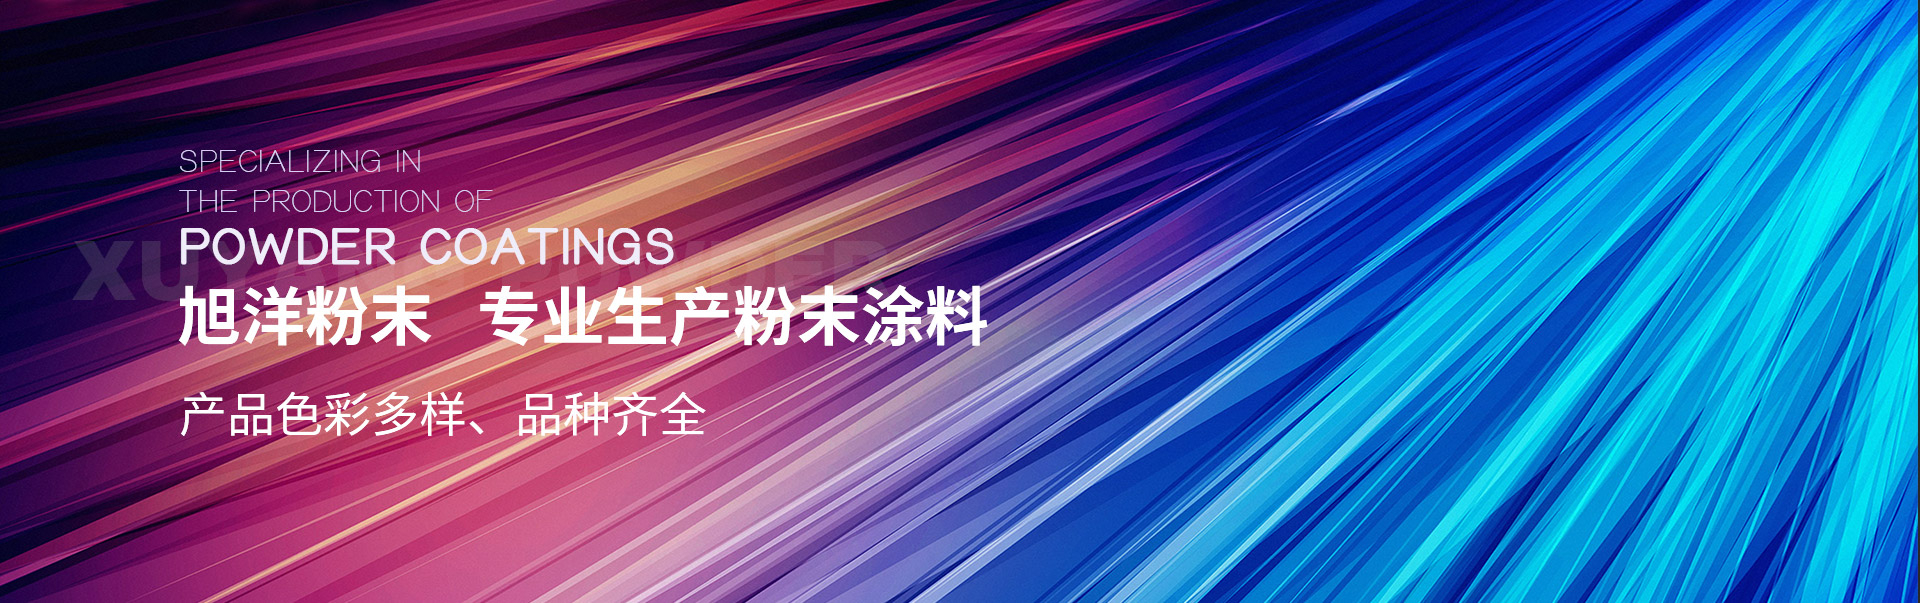 PC内页-中文版产品中心banner